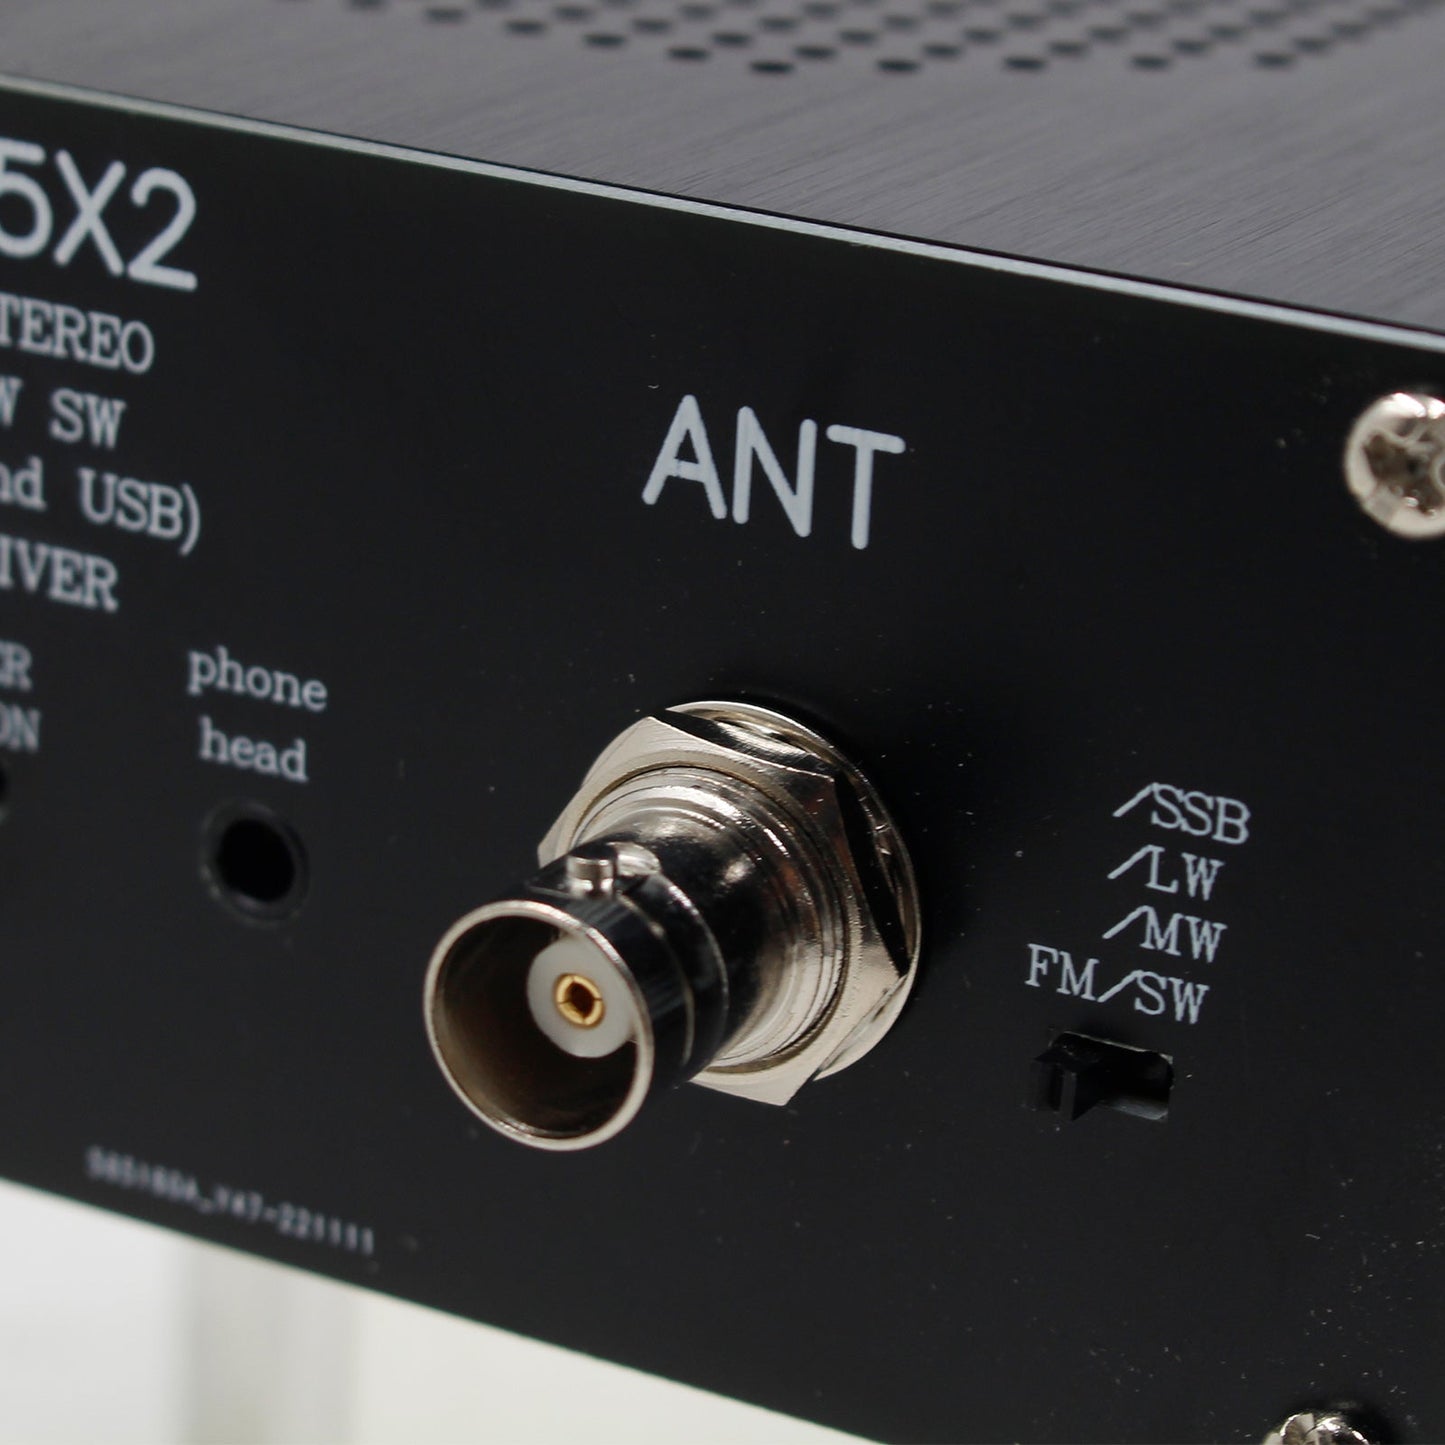 Neuer ATS-25X2 APP-Netzwerk WIFI All-Band-Funkempfänger FM LW MW SW DSP-Anschluss